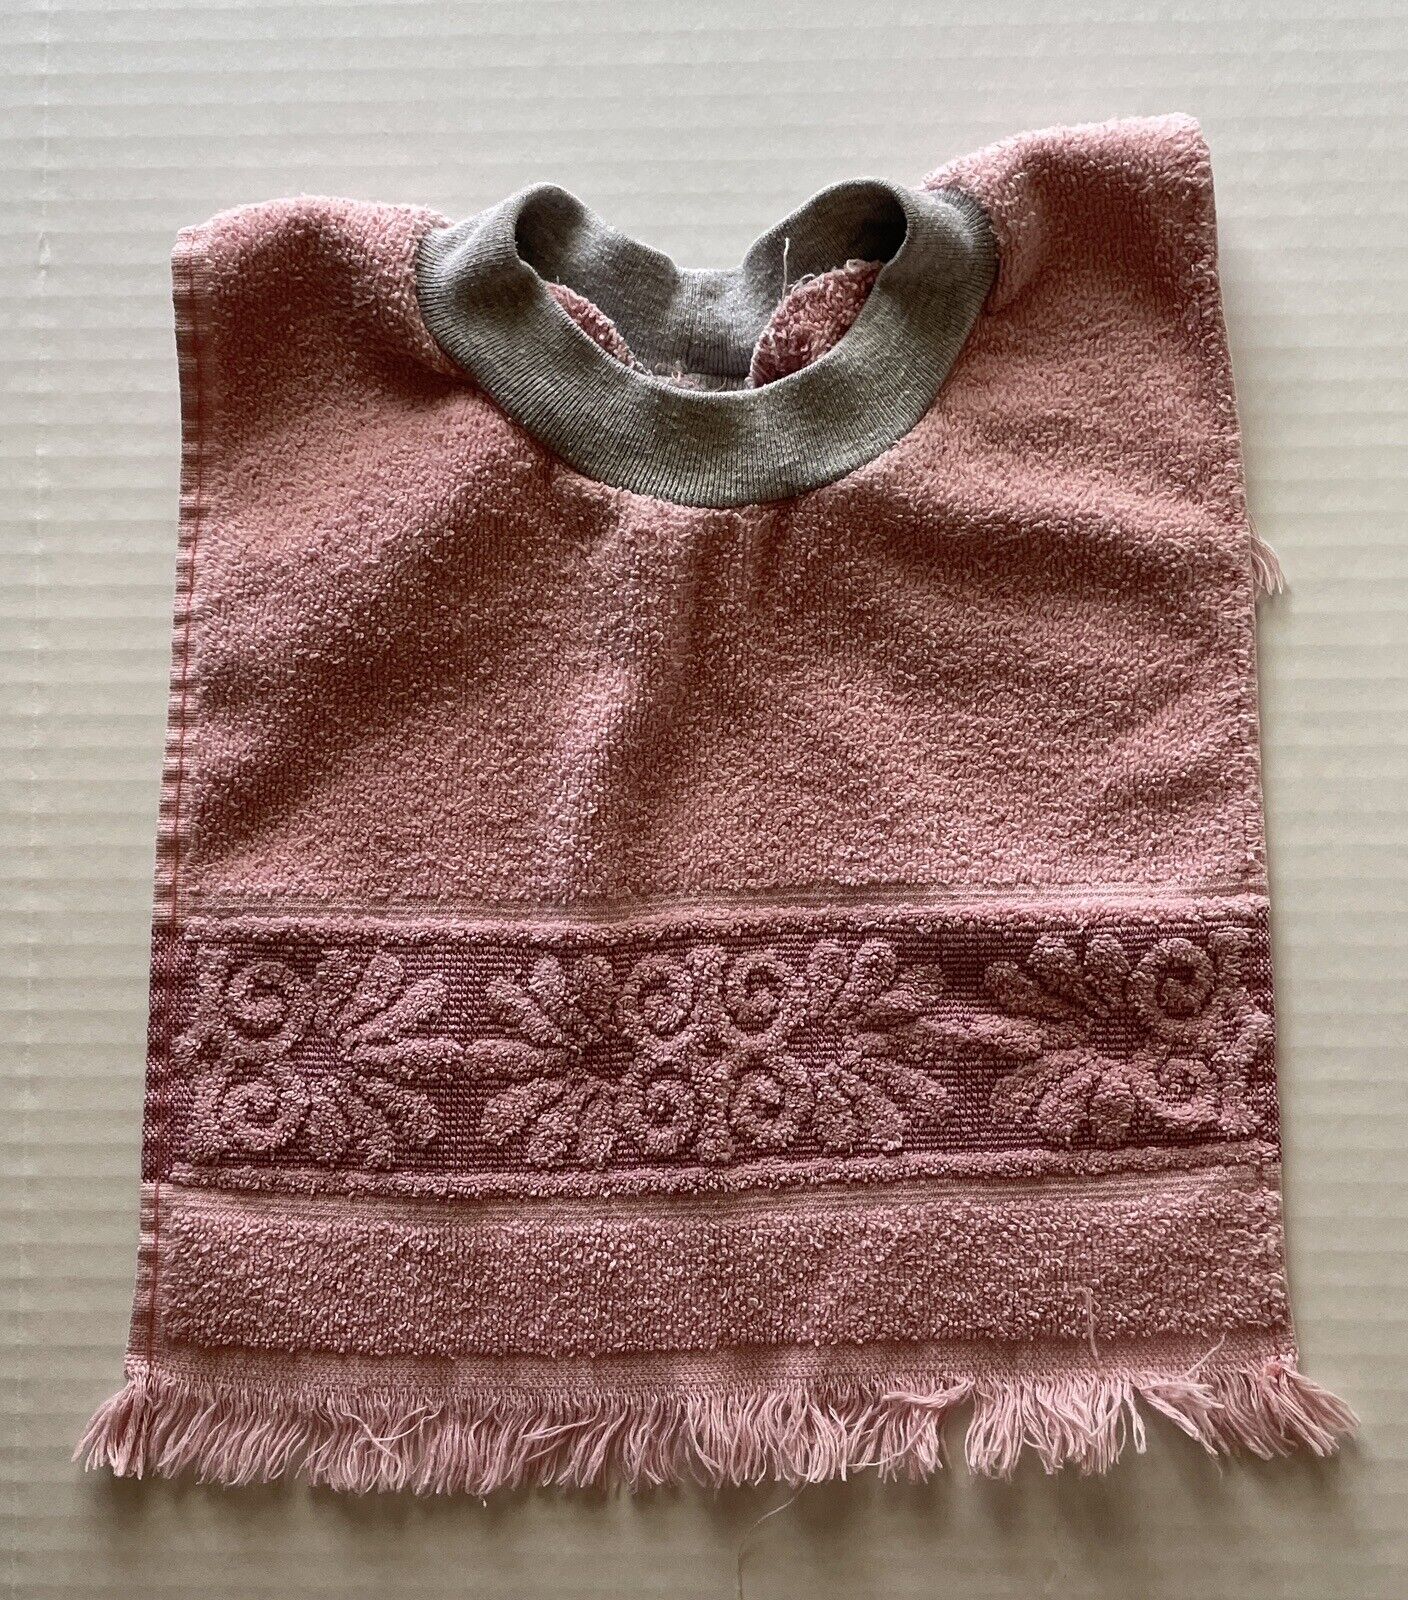 Vintage HandMade Towel Baby Bib Pink